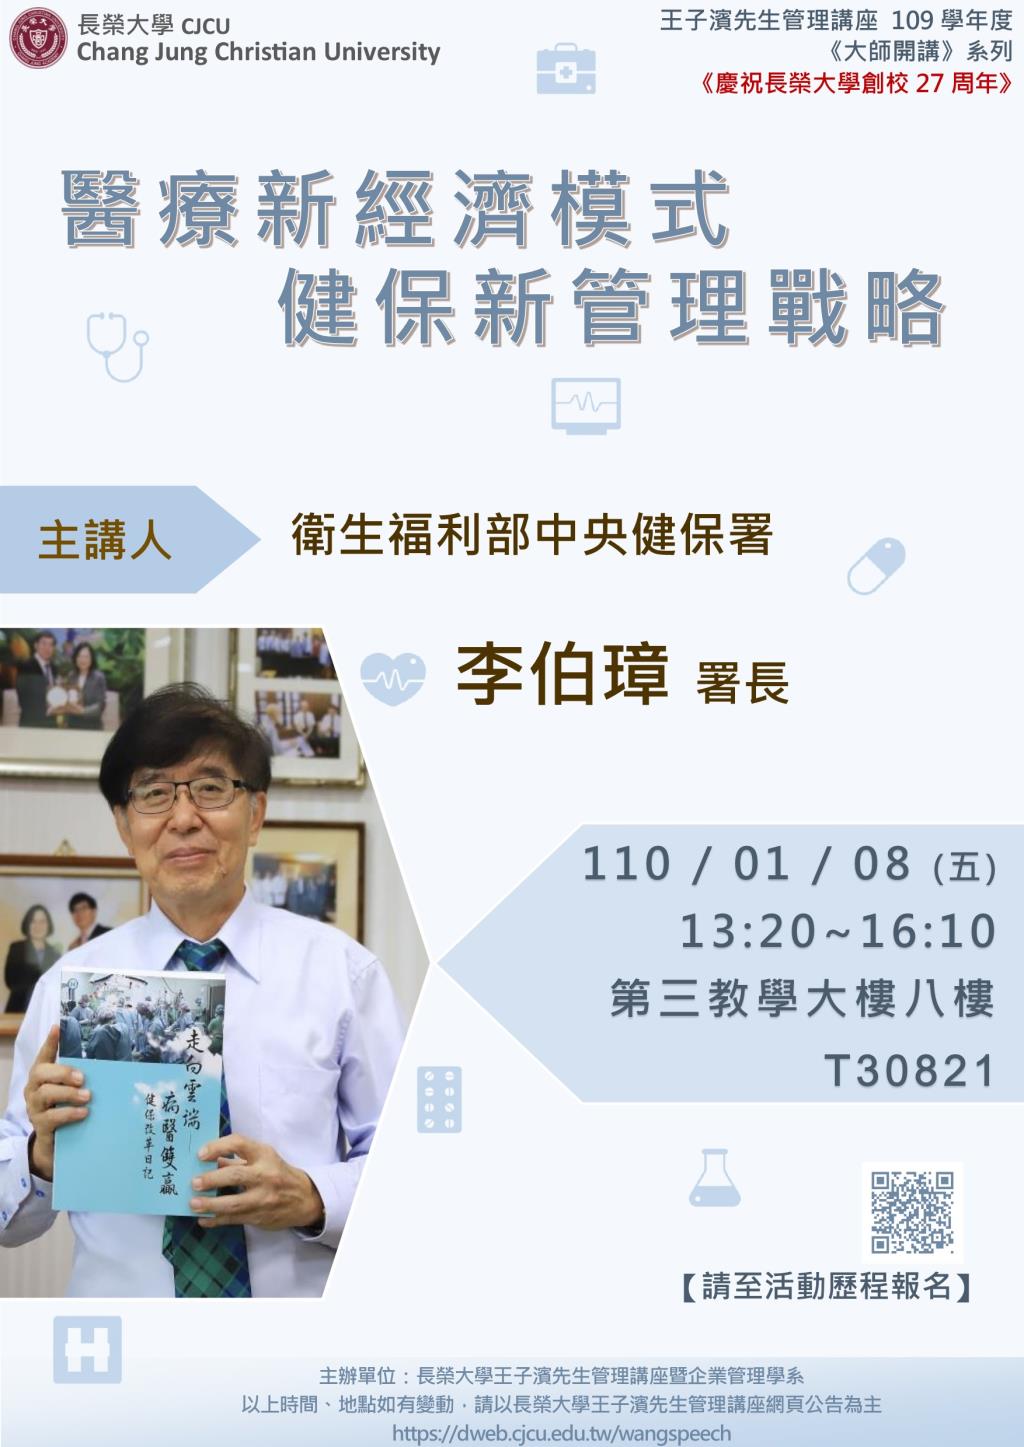 敬邀參加下週五下午(01/08)王子濱先生管理講座--醫療新經濟模式-健保新管理戰略 衛福部健保署 李伯璋署長